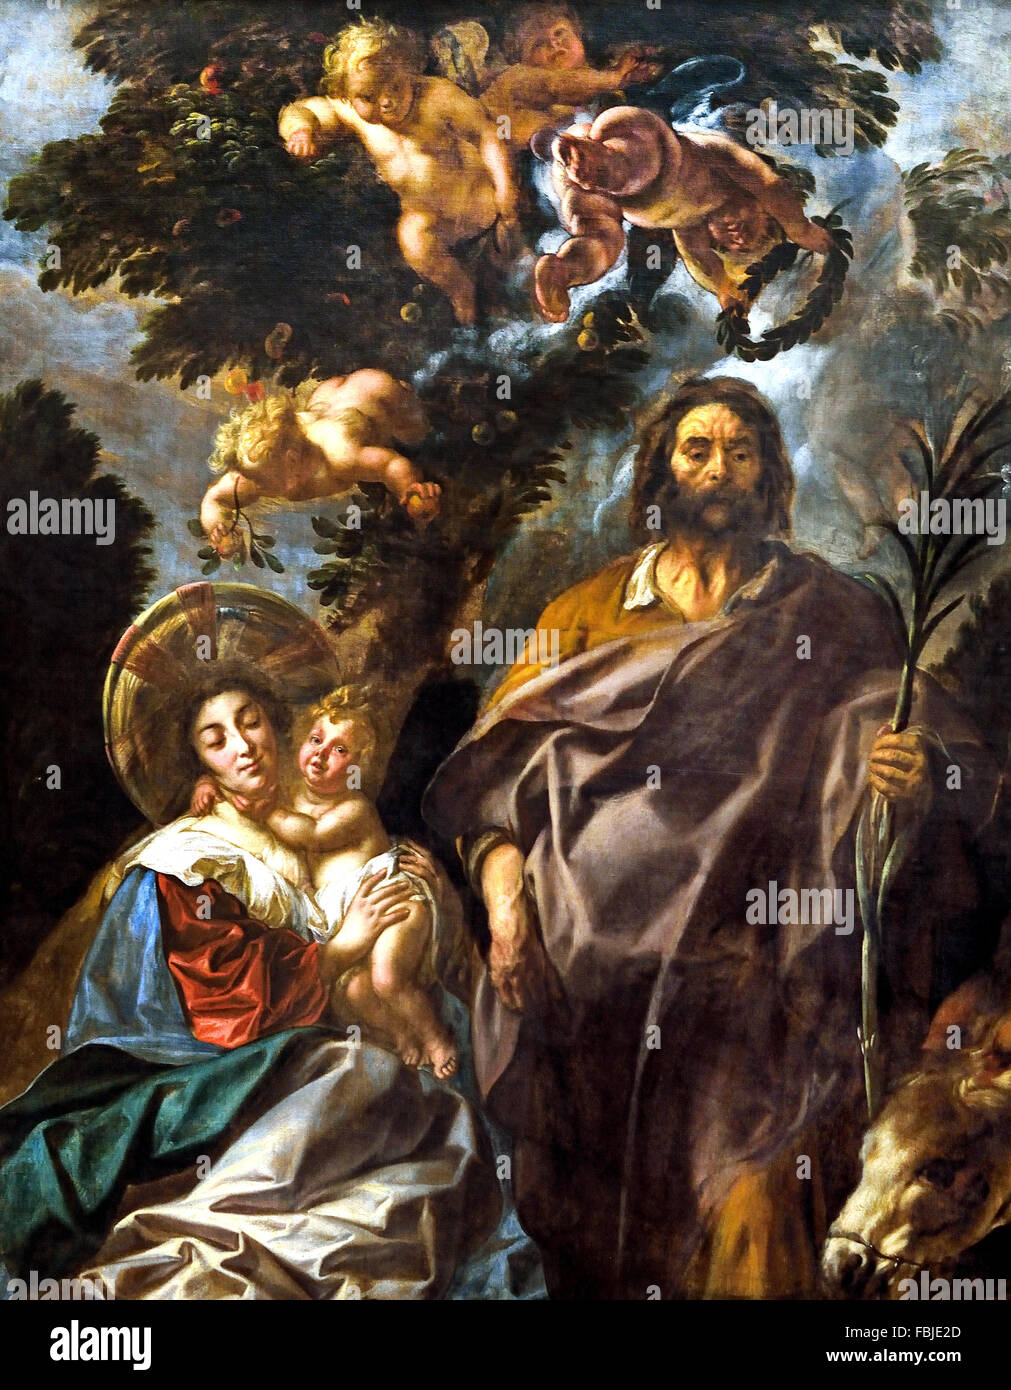 Le repos pendant la fuite en Égypte Jacob Jordaens (1593 - 1678) peintre baroque flamand Belgique Belge Banque D'Images